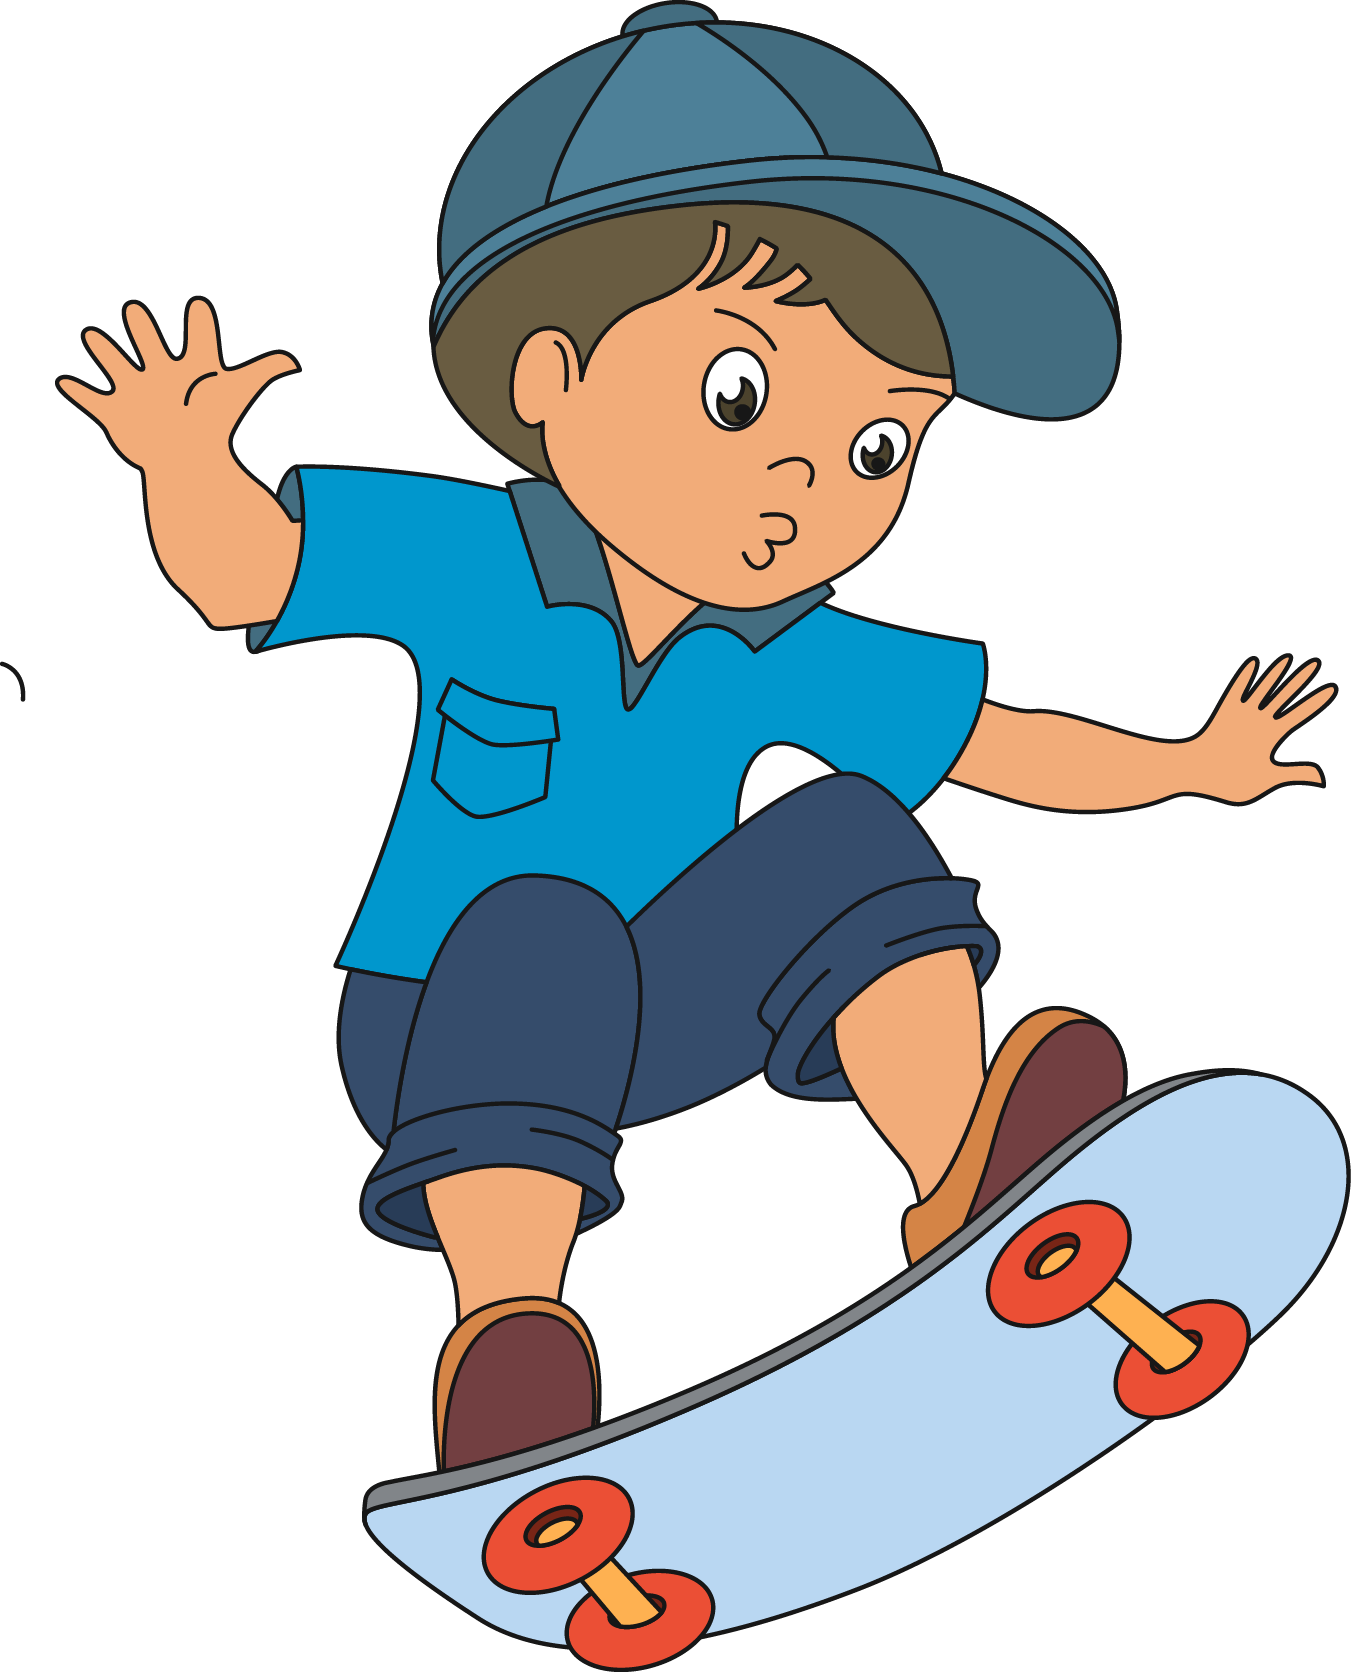 Skateboarding Child Roller Skating - Skateboarding Child Roller Skating (1351x1672)